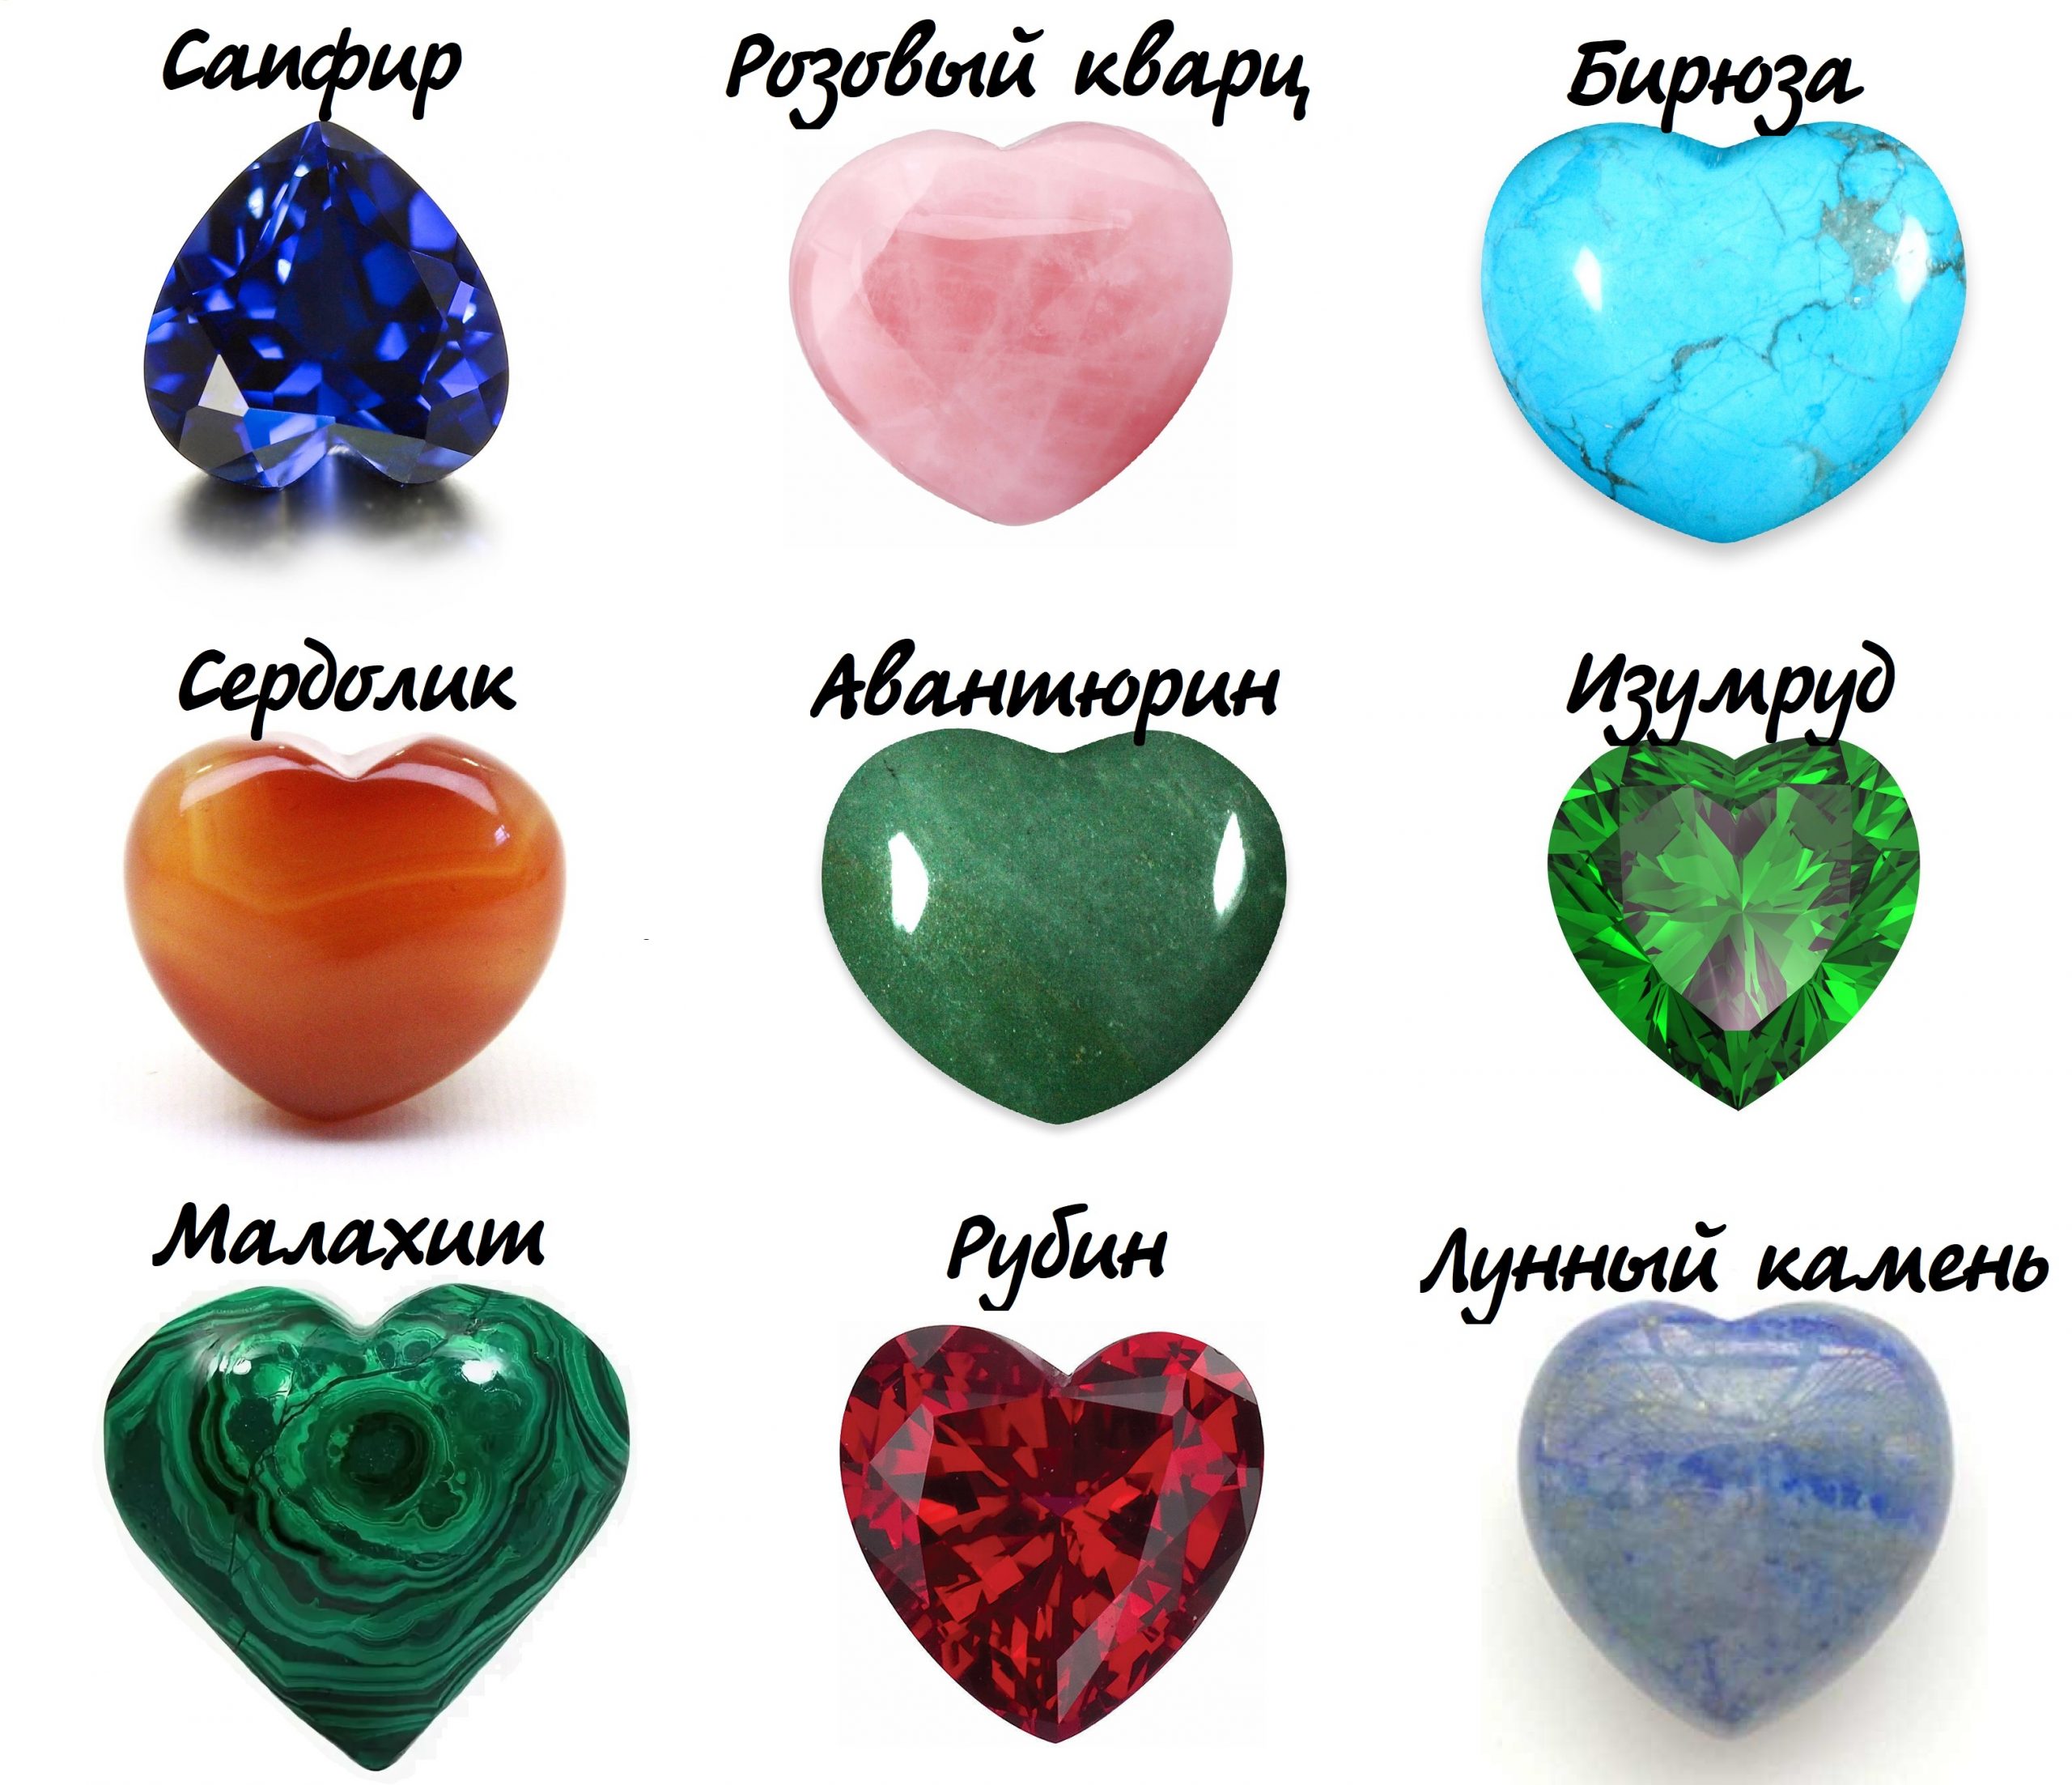 Камень вечной любви. На Камне любви. Камень для притягивания любви. Камни привлекающие любовь. Любовные минералы талисманы.